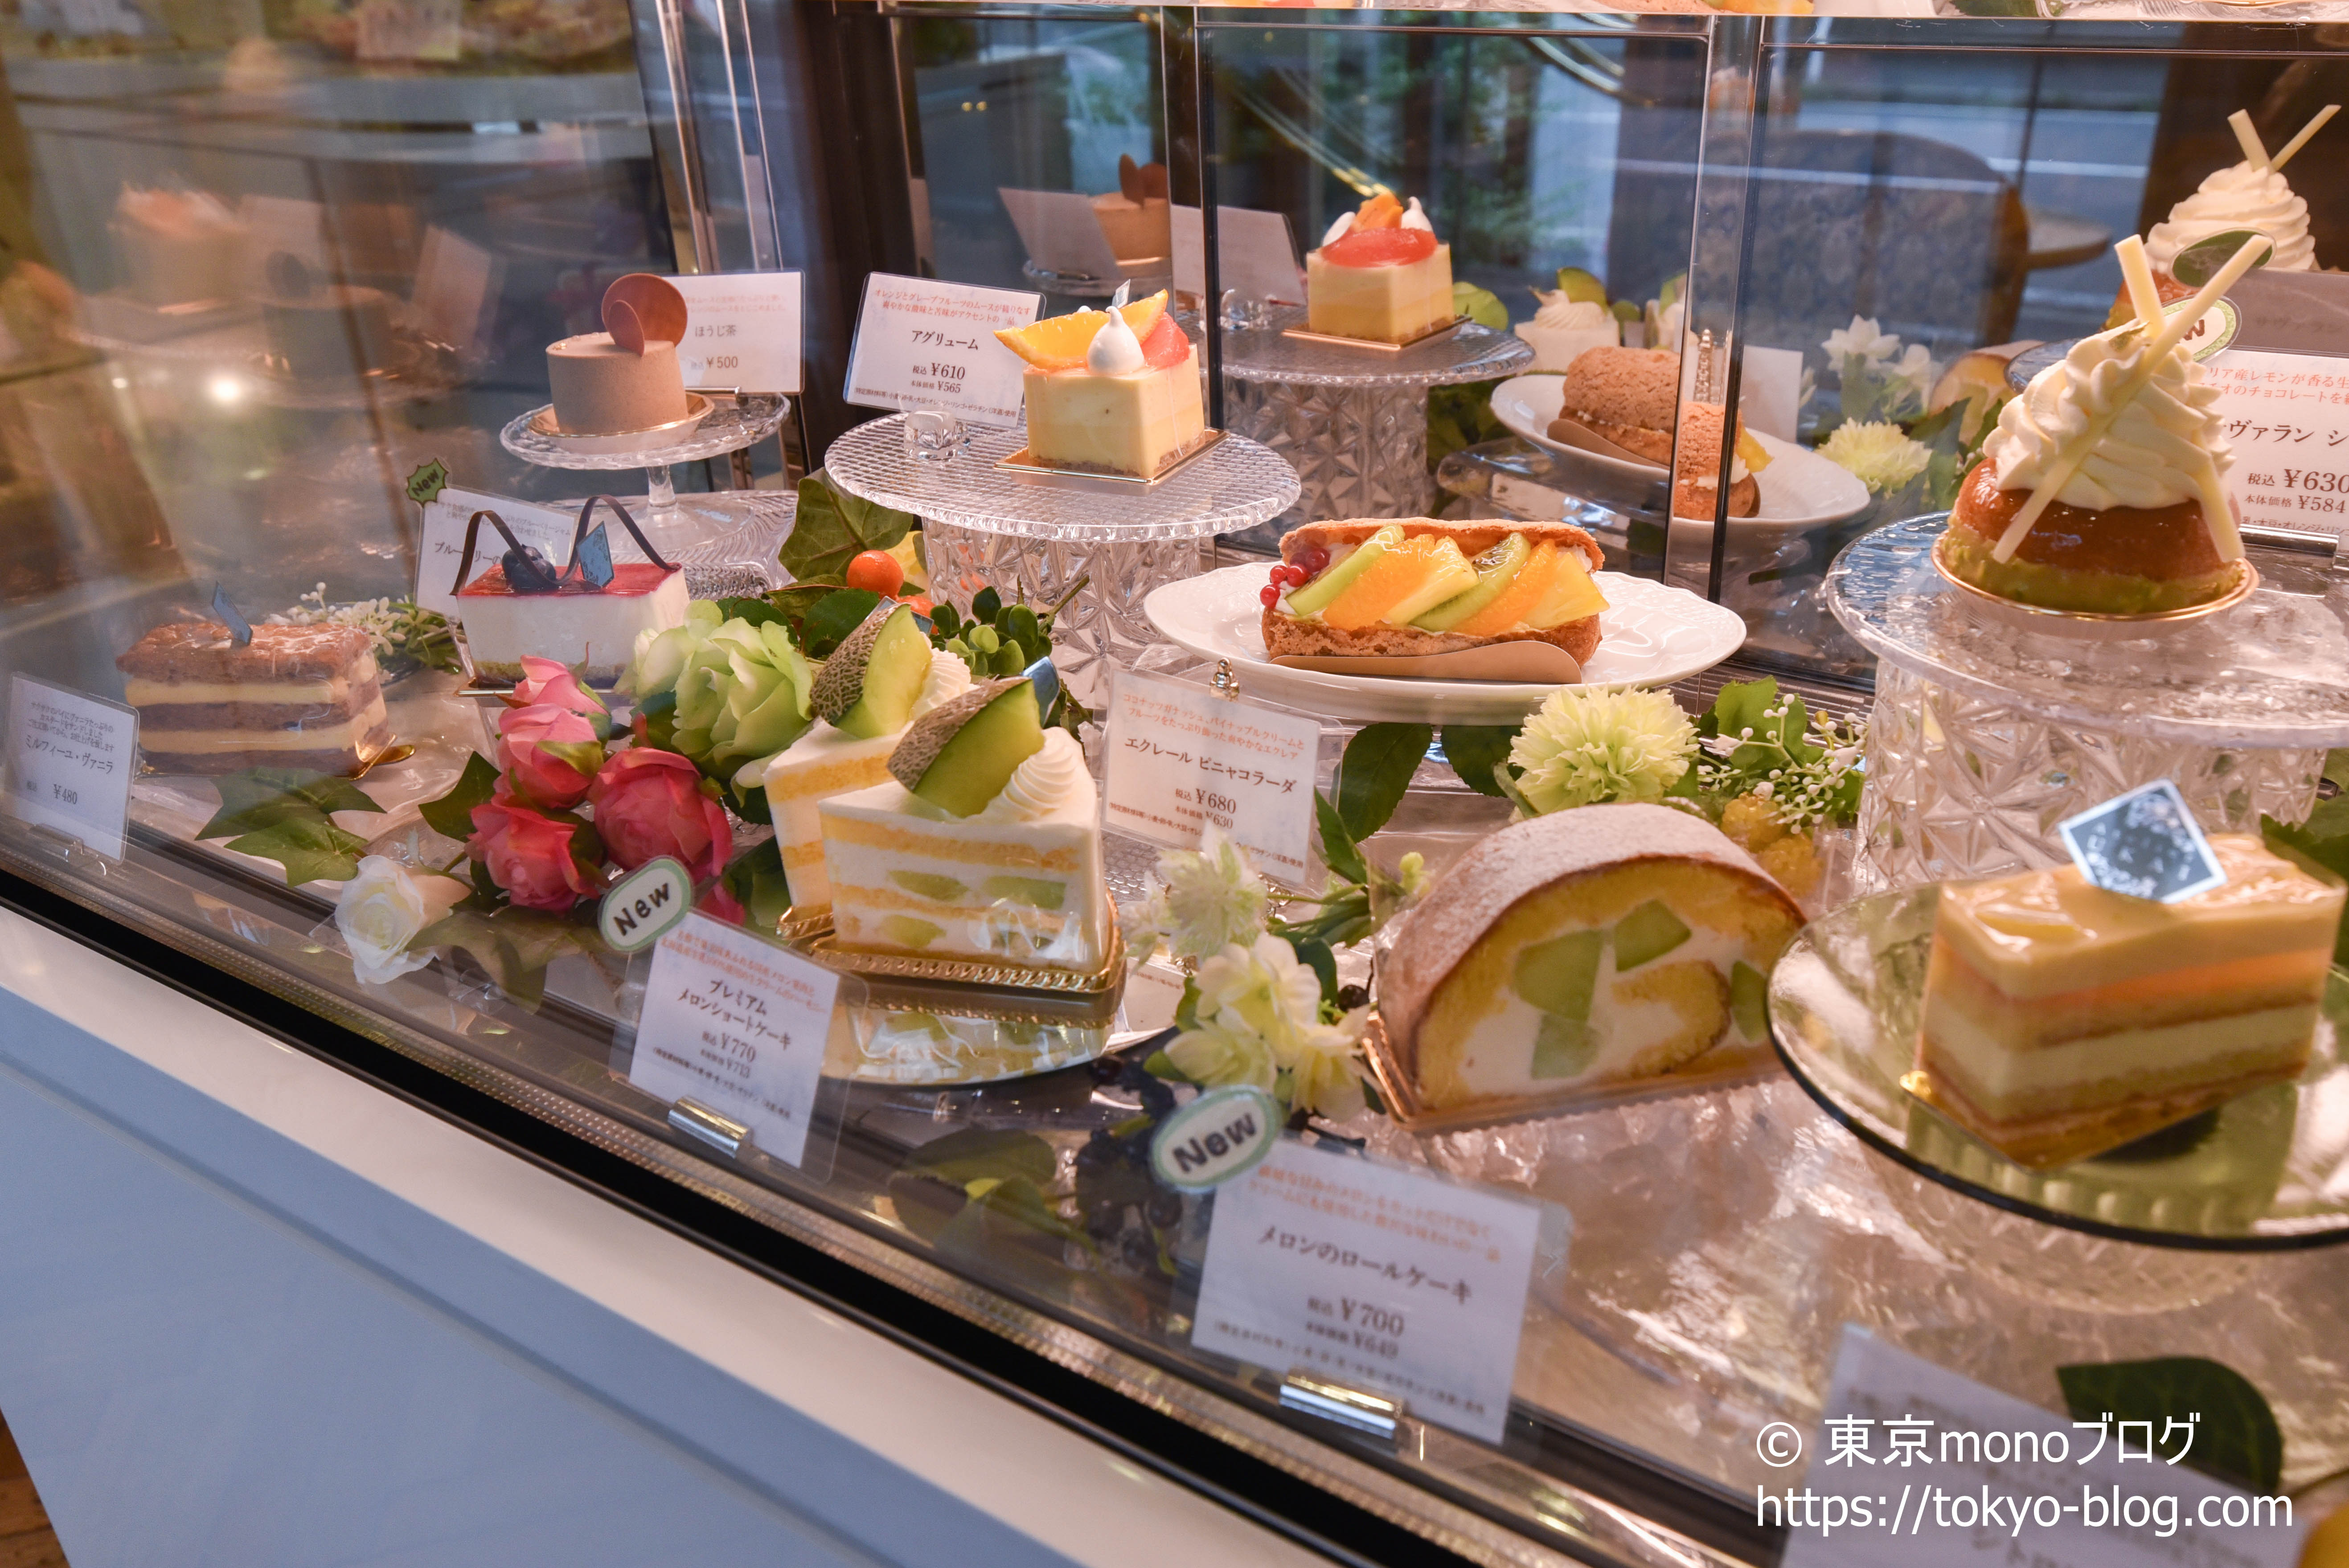 たまプラーザ駅の人気ケーキ屋 アトリエうかい Atelierukai 紹介 人気のクッキーやふきよせの写真もあります 東京monoブログ